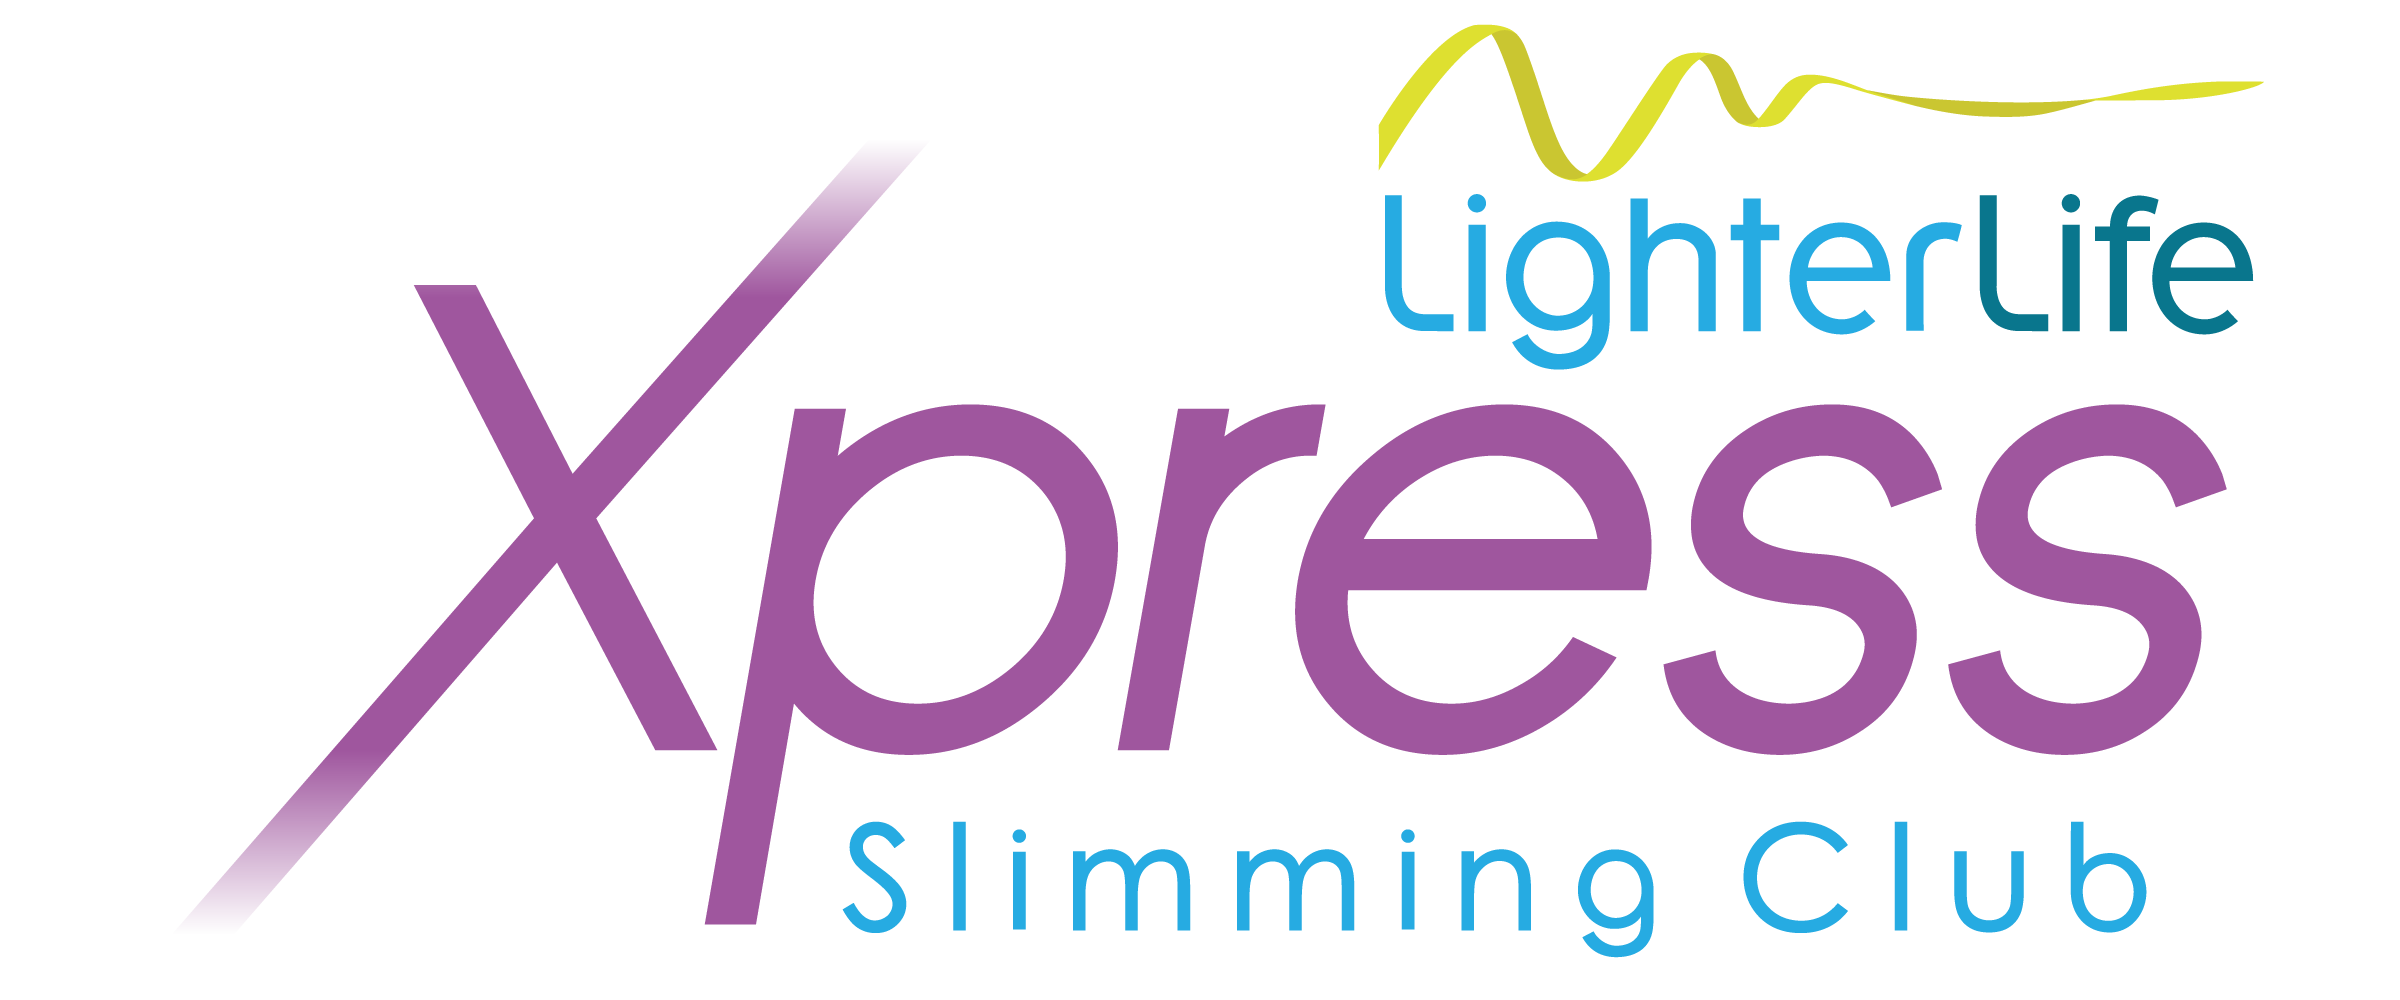 LighterLife logo